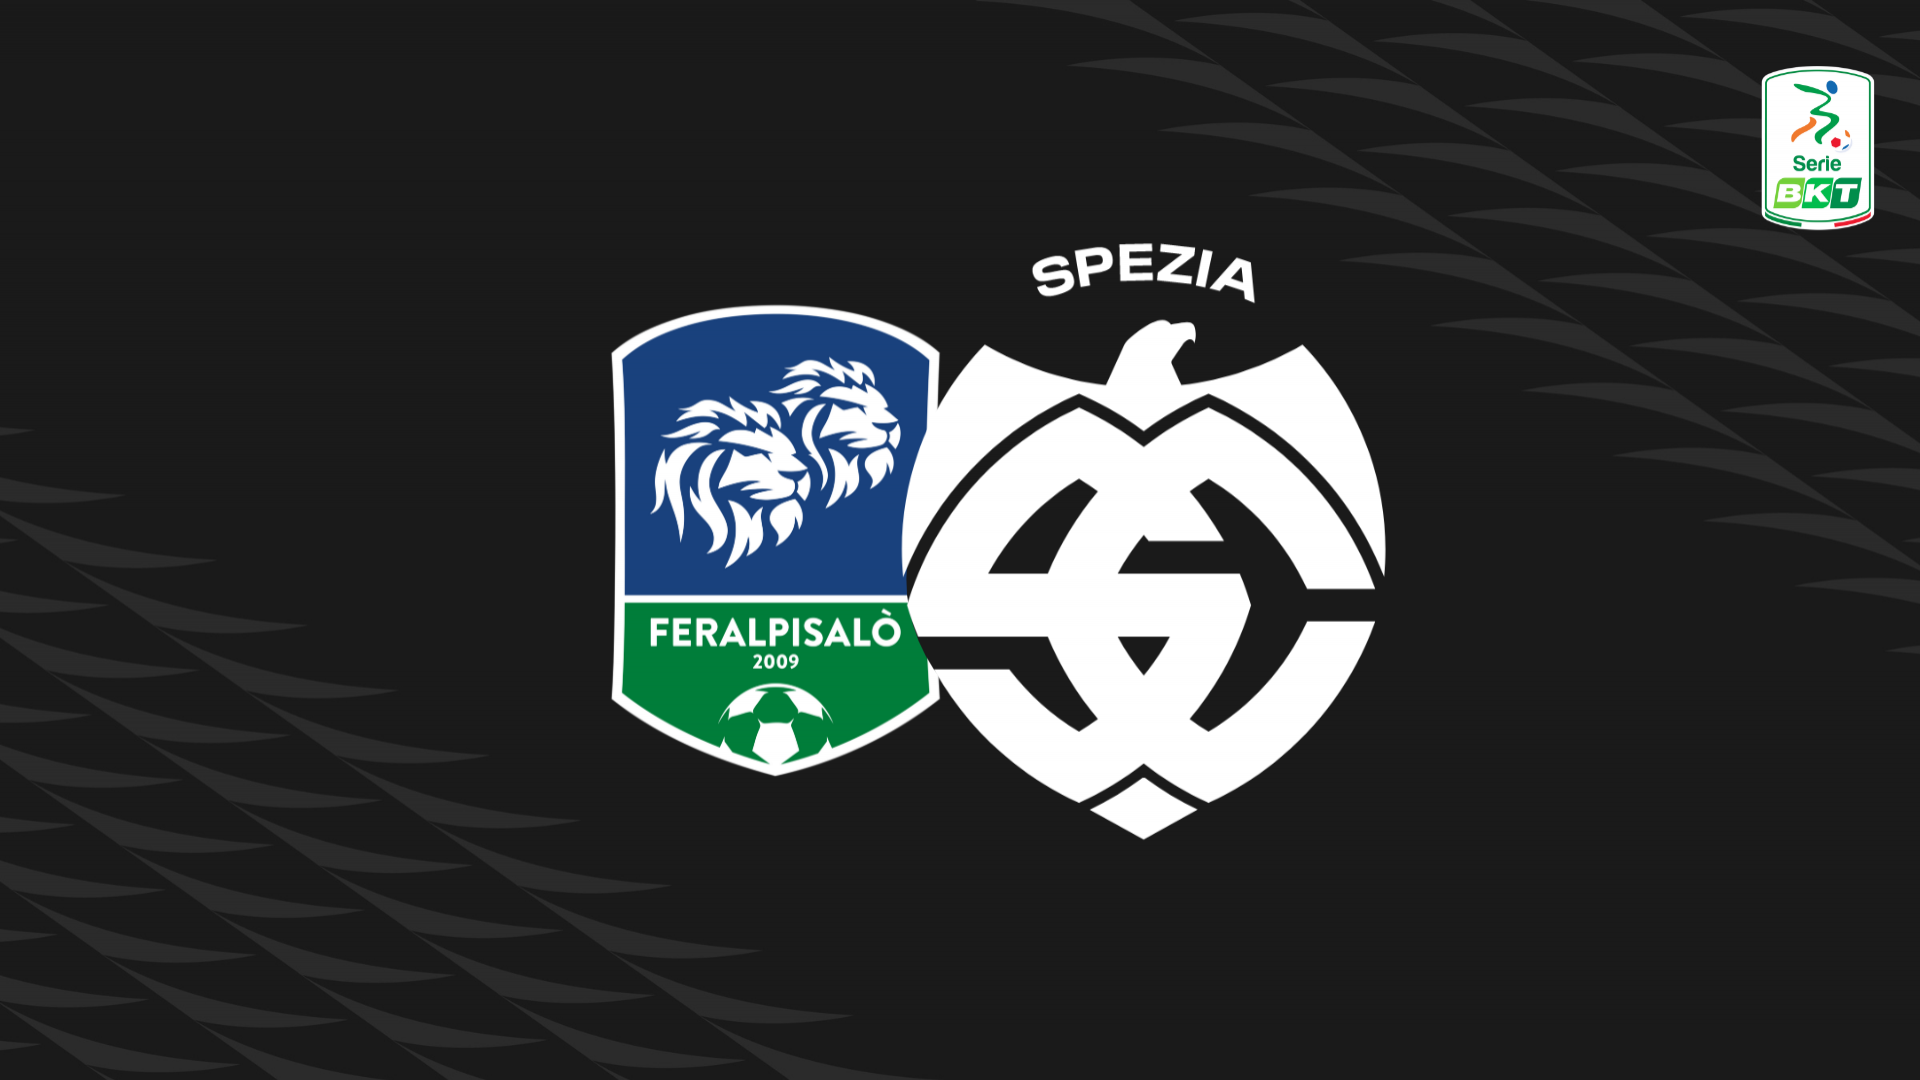 Serie BKT: Feralpisalò-Spezia 1-2